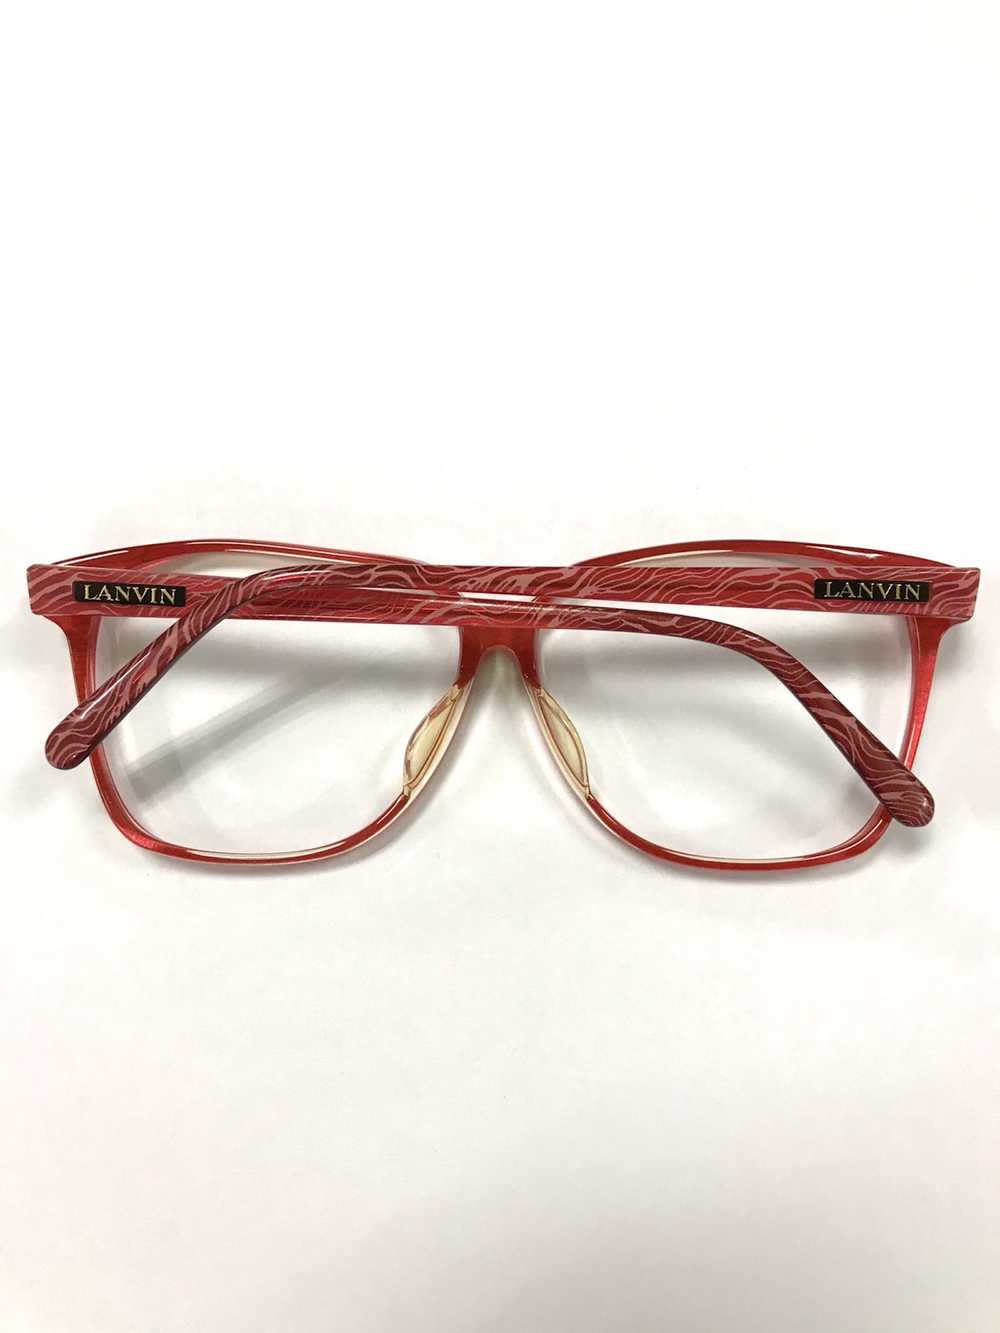 Lanvin Lanvin frame glasses x vintage - image 2